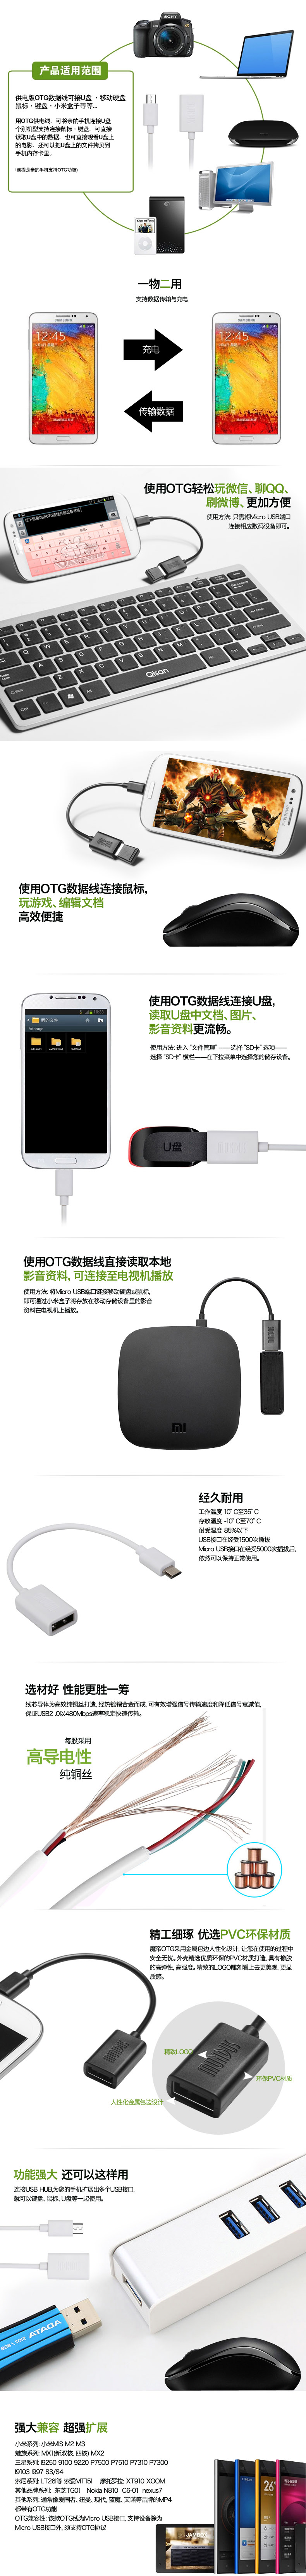 魔帝（MUNDUS） OTG数据转接线 USB接口/用于小米盒子OTG线 /u盘/鼠标